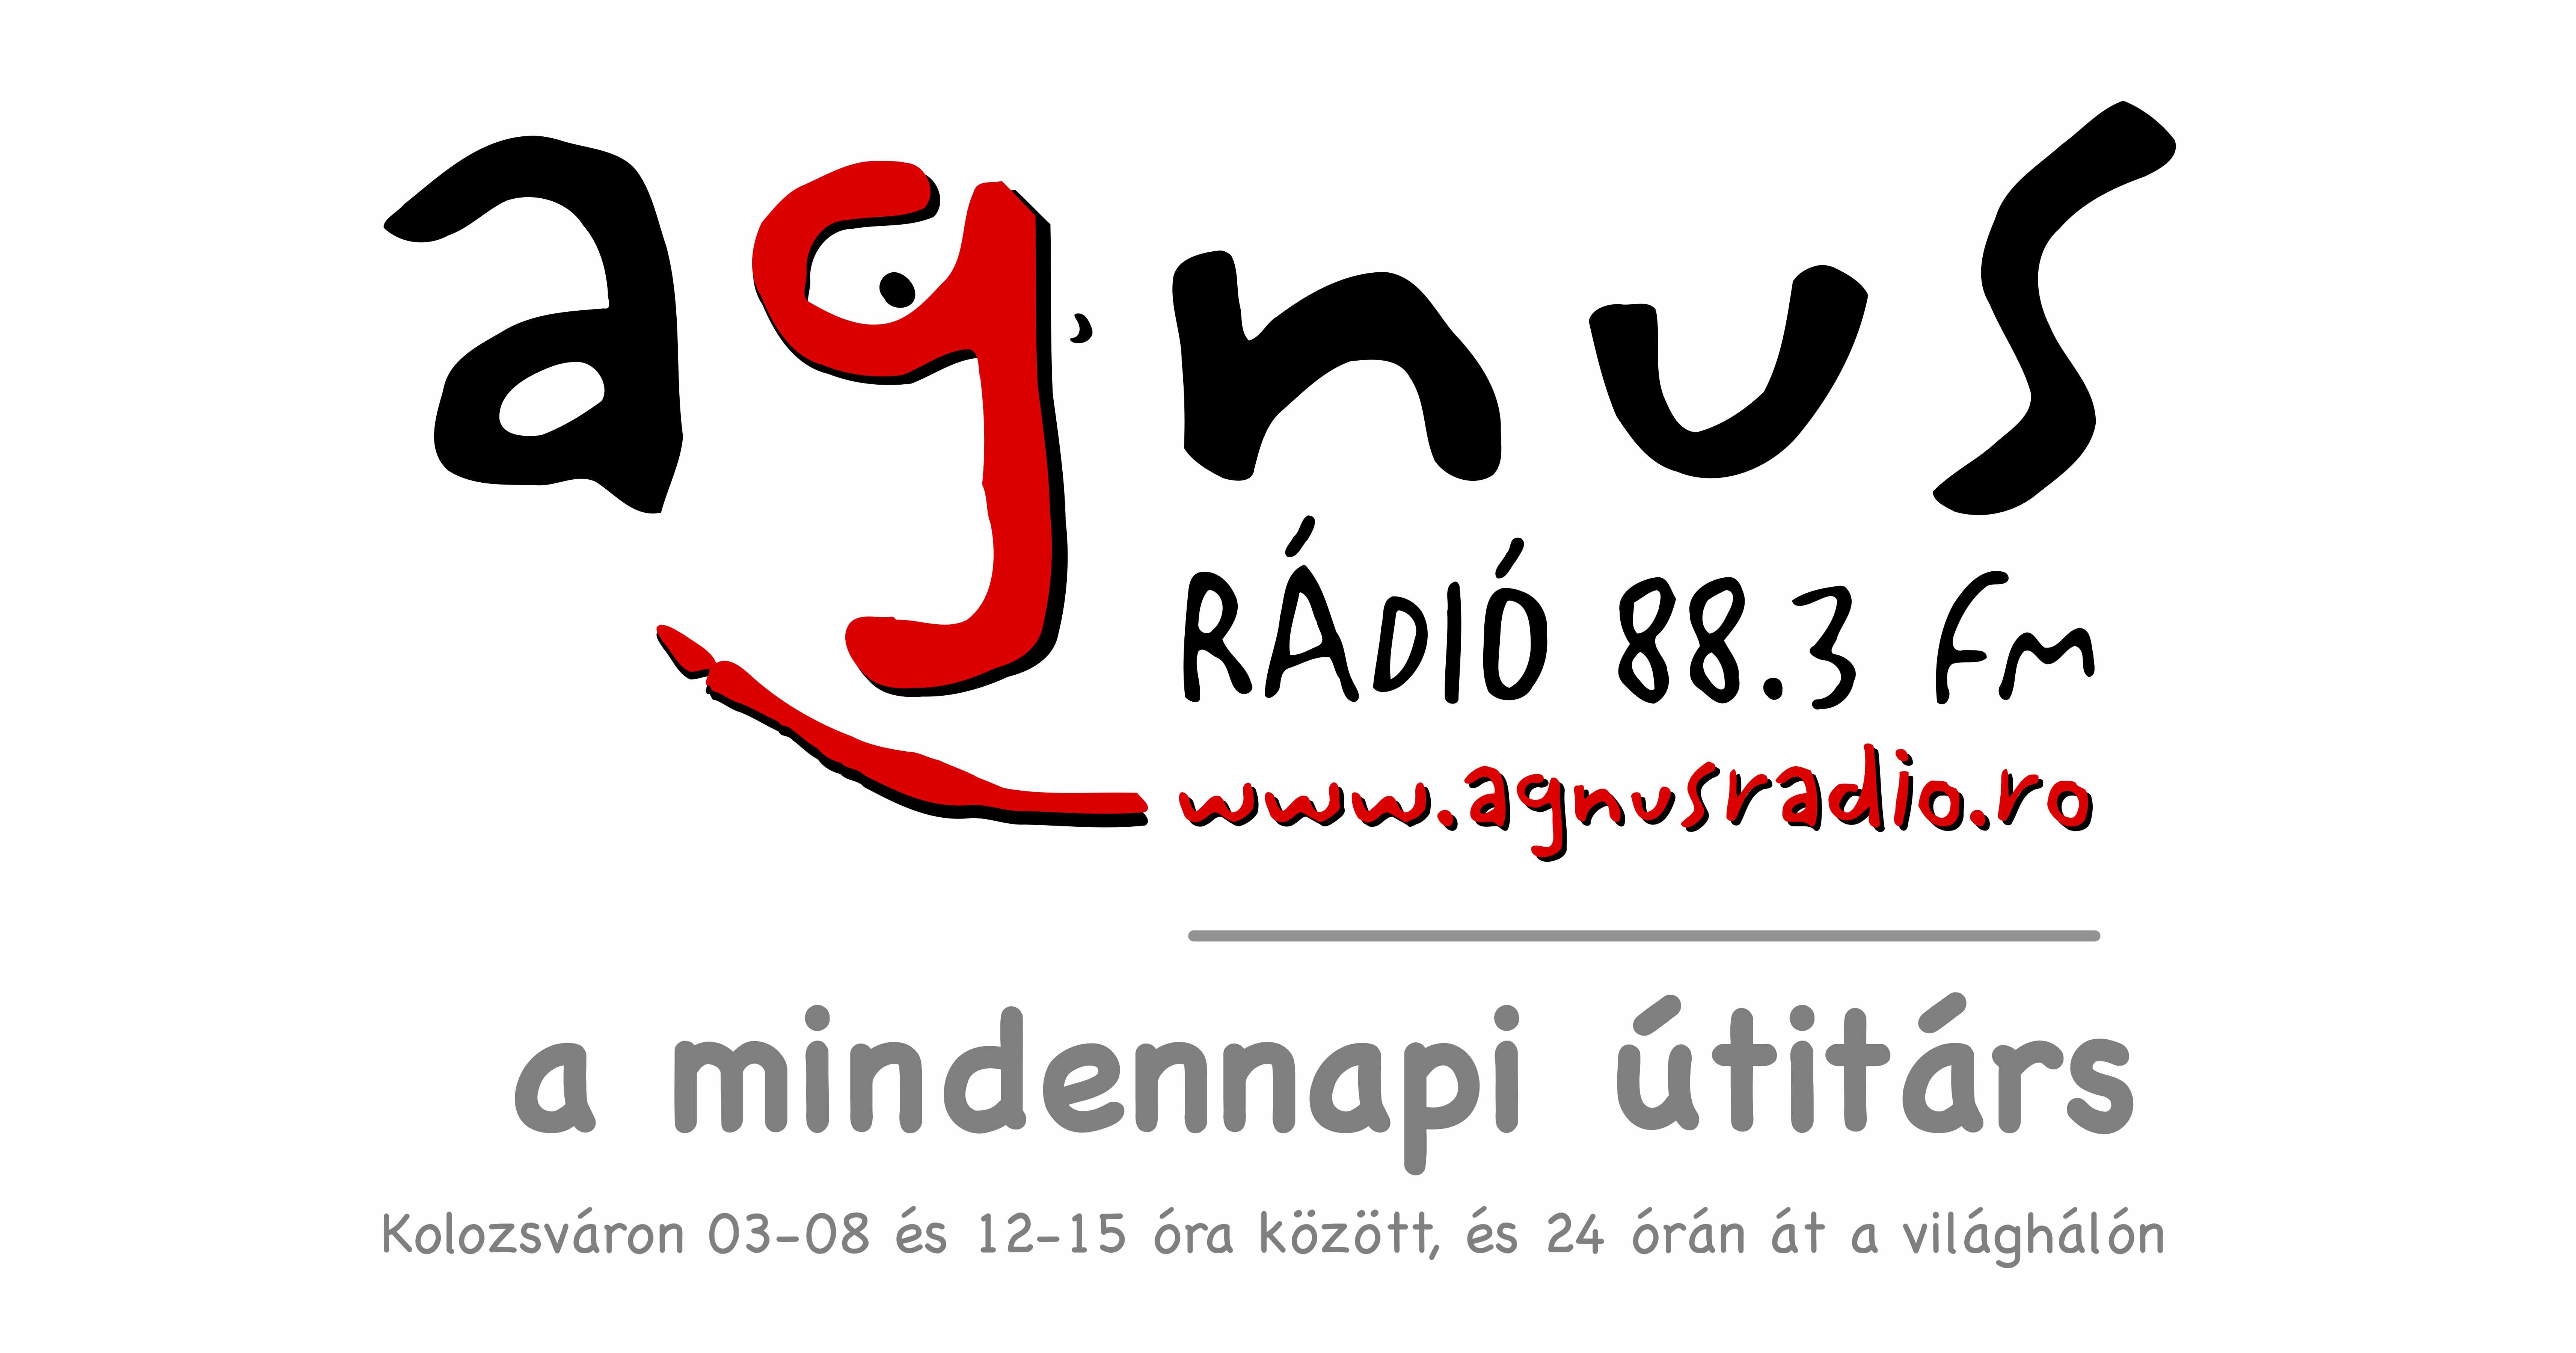 Agnus radio